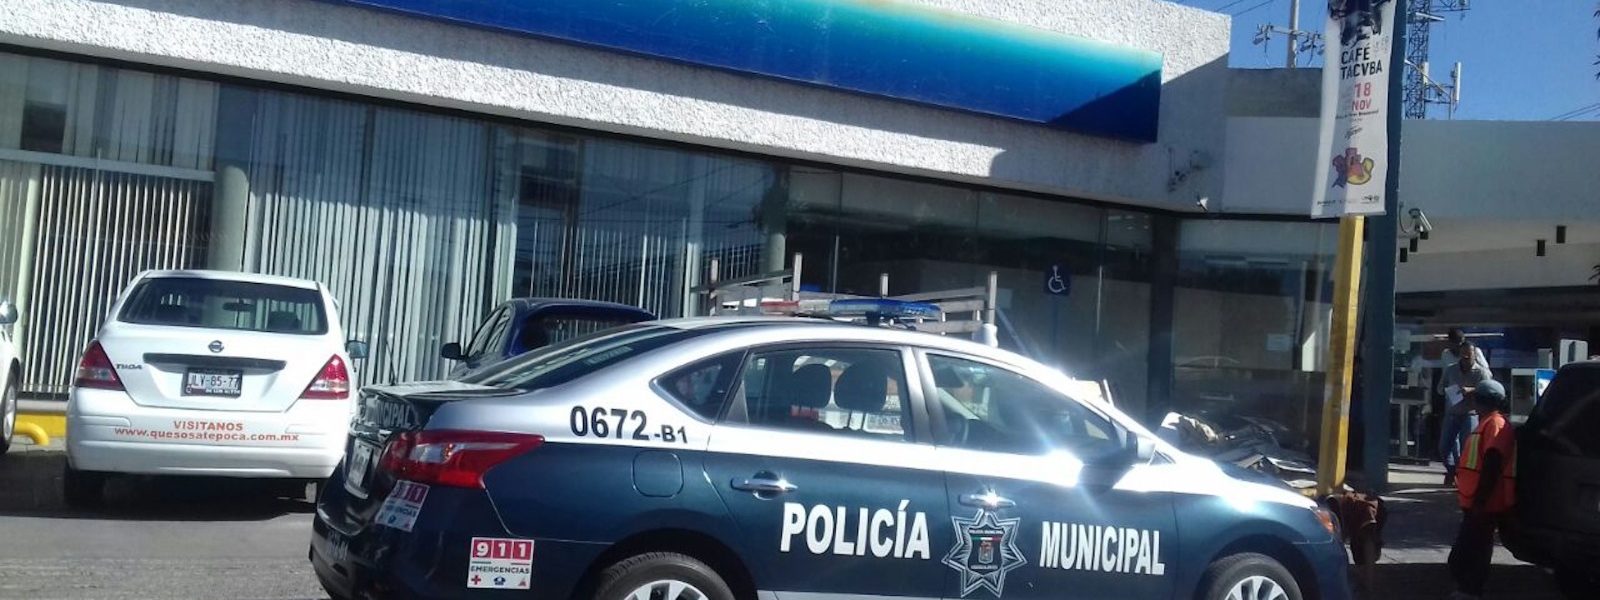 CONTINÚA LA POLICÍA MUNICIPAL DE AGUASCALIENTES CON EL SERVICIO GRATUITO PARA EL TRASLADO DE VALORES